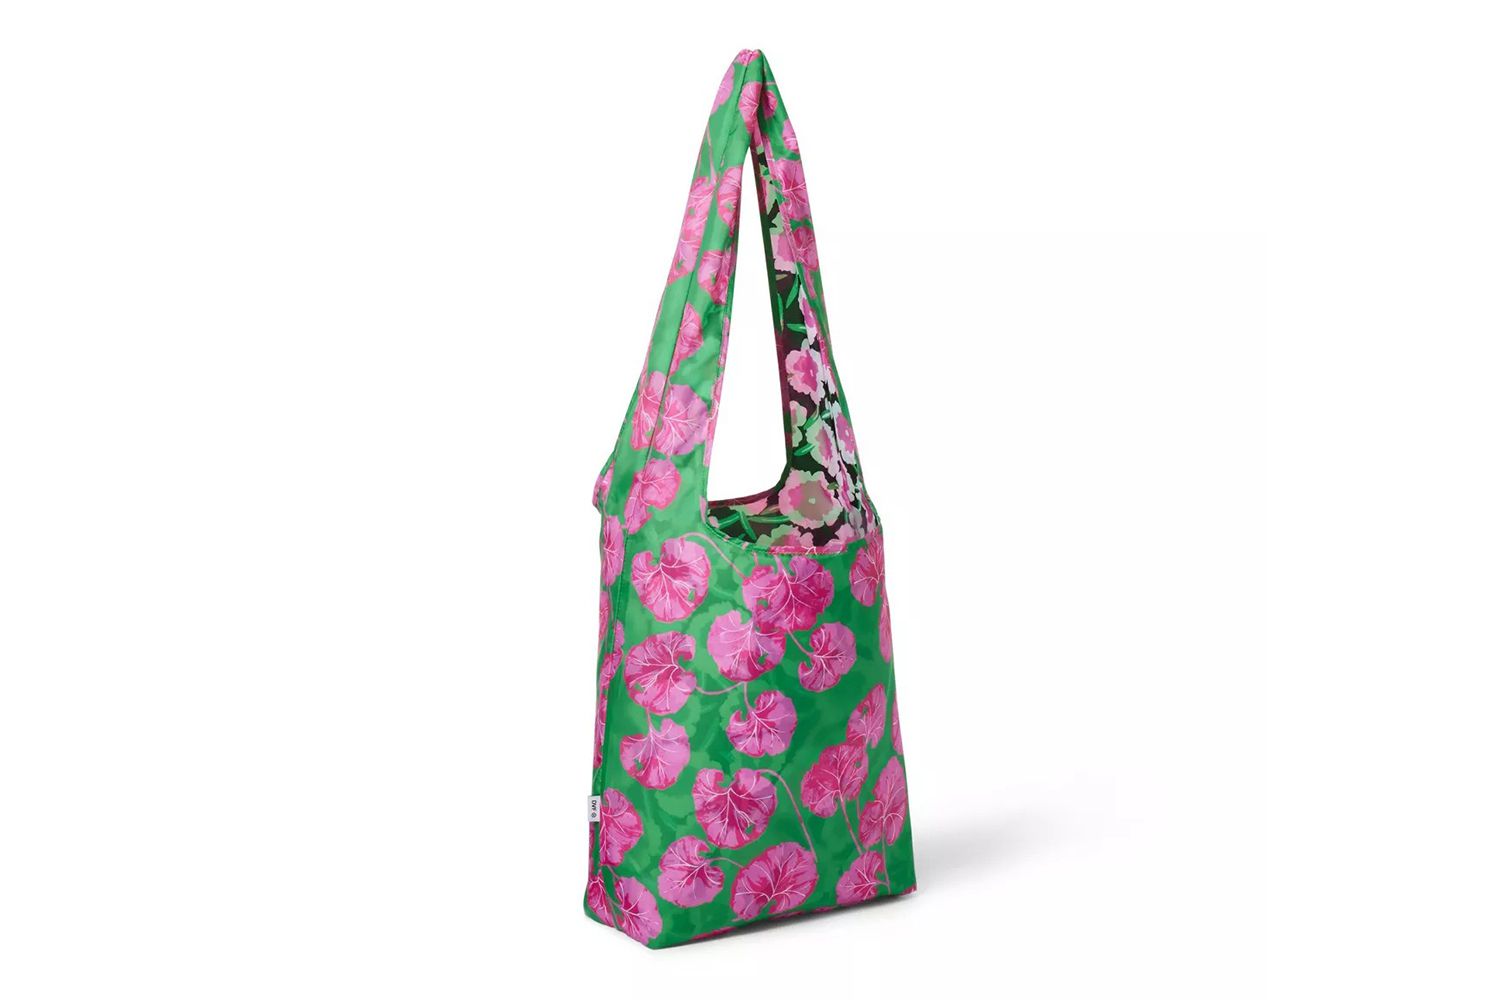 Diane von Furstenberg for Target Poppy/Geranium Leaf Pink/Green Reversible Reusable Bag - DVF for Target